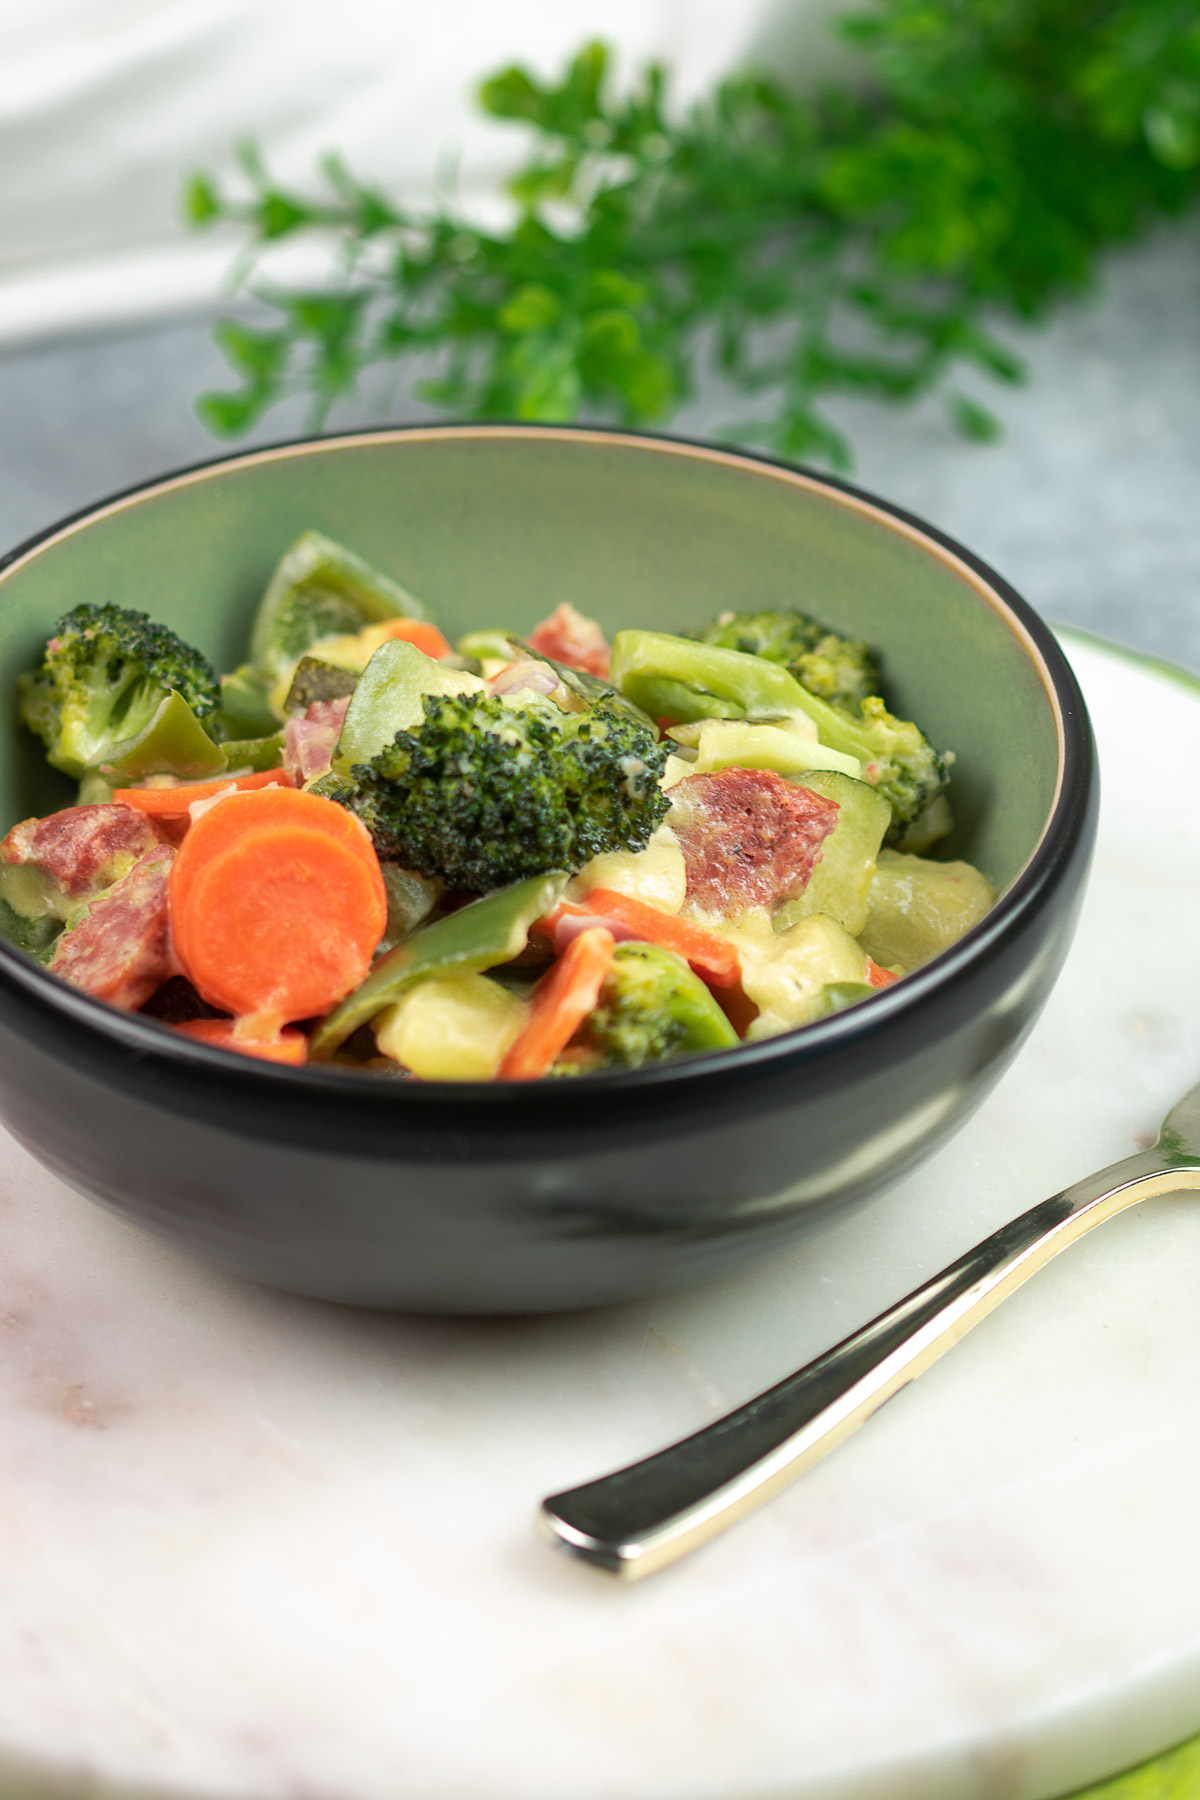 Das One-Pot-Gemüse ist ein leckerer Eintopf mit verschiedenem Gemüse, Mettenden und Schmand. Das Gericht ist einfach zu kochen und sehr lecker.